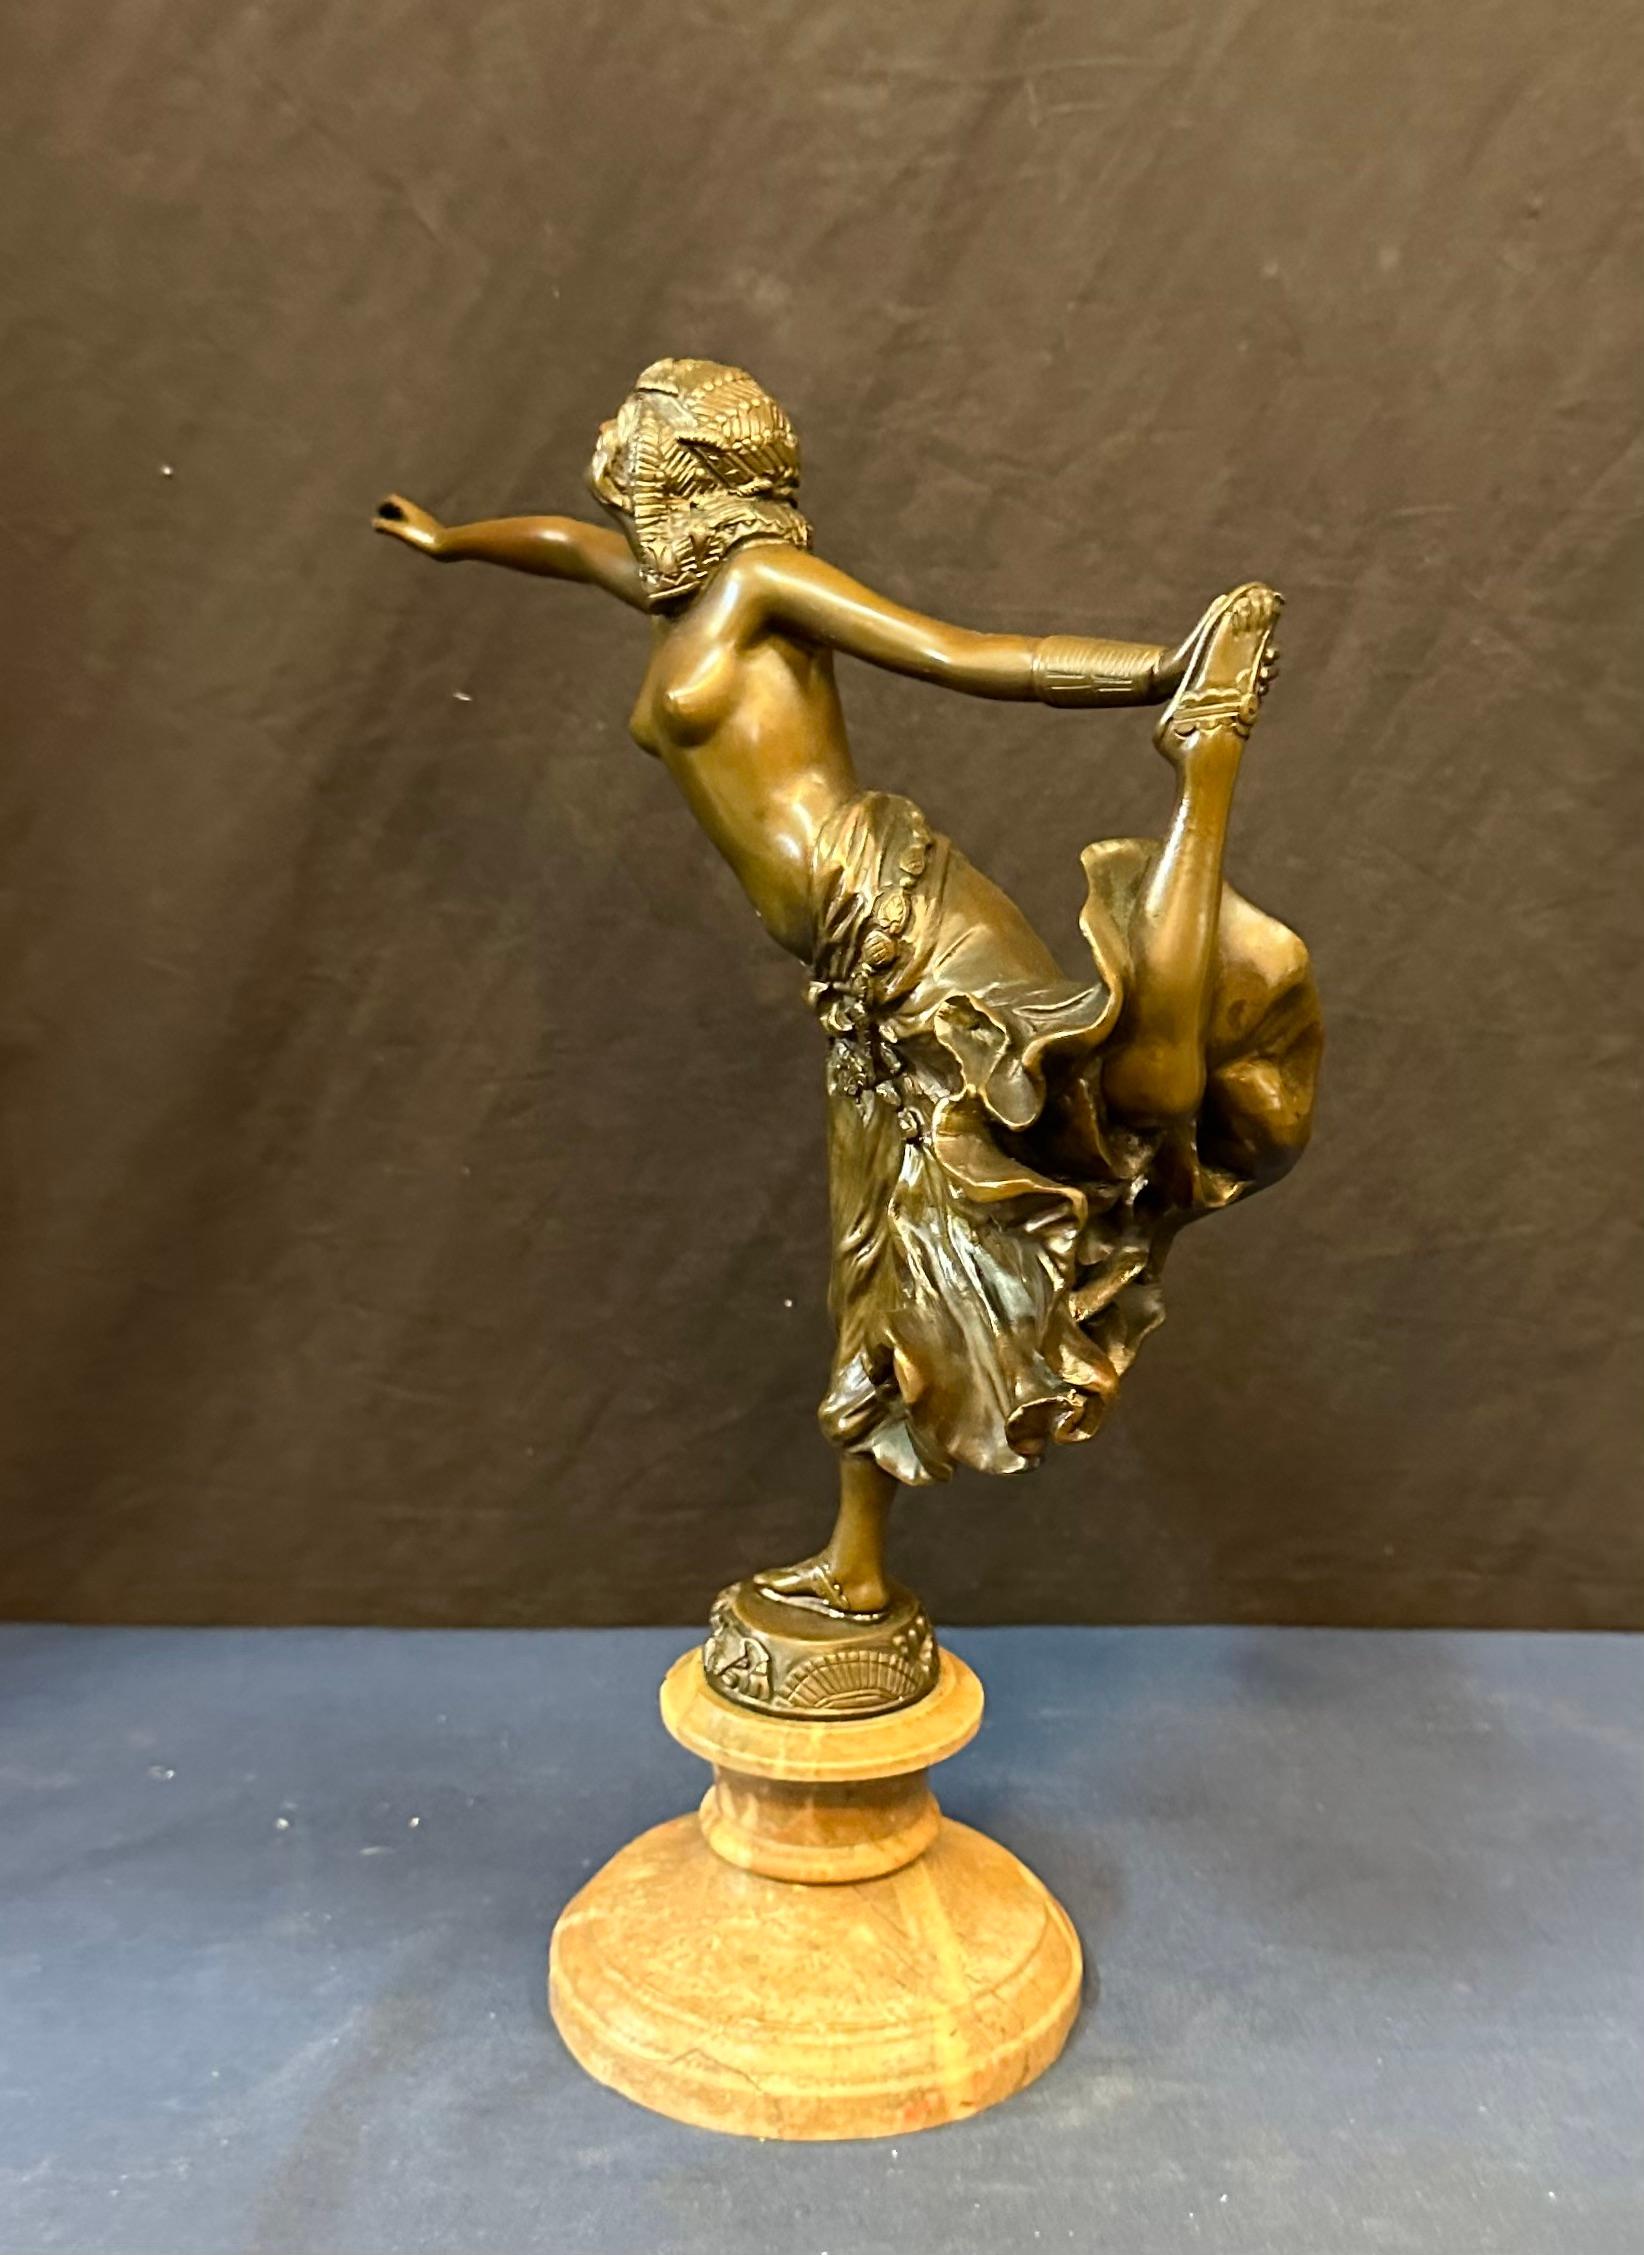 Cette sculpture en bronze de style continental (français) date du début du 20e siècle. Il représente une danseuse égyptienne exotique partiellement nue, les bras tendus et une main tenant son pied haut. La sculpture magnifiquement patinée est signée